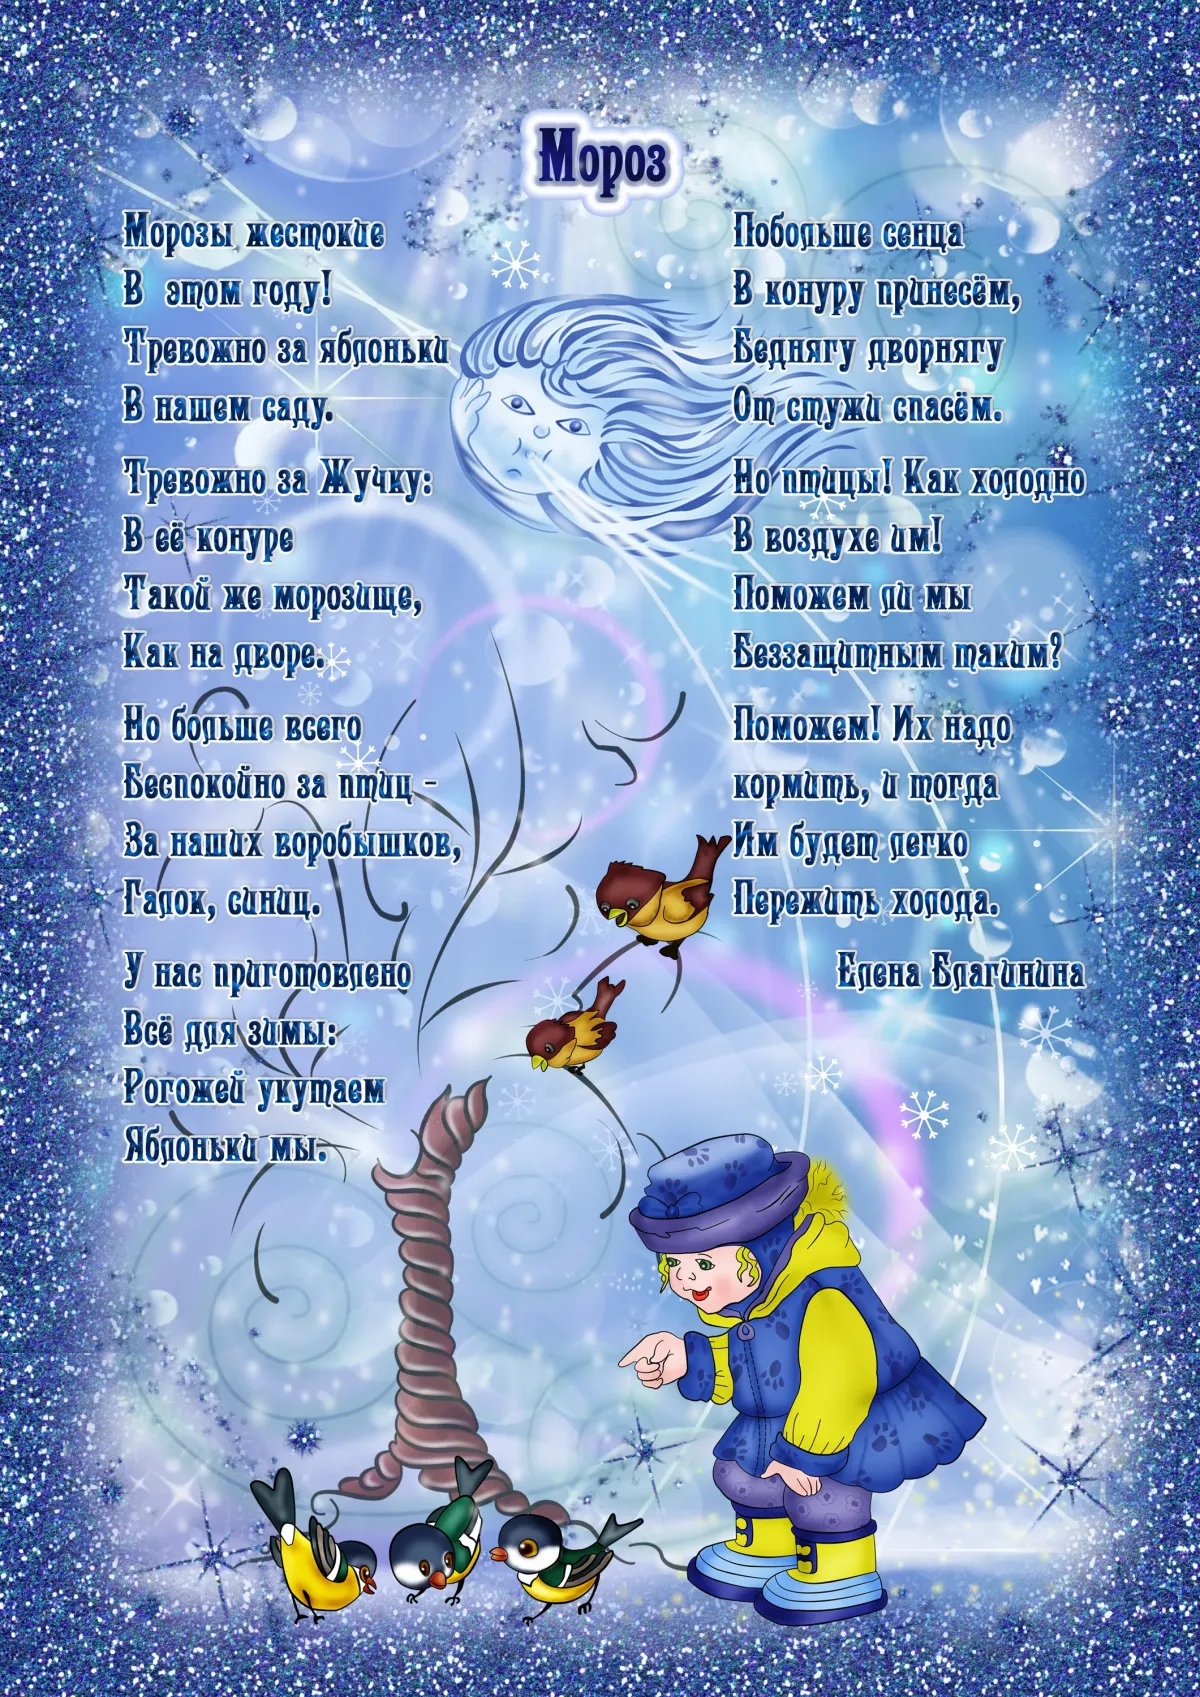 Красивое детское стихотворение. Стихи про зиму. Стихотворении ПРТ зиму. Стихи для дитие прозиму. Стихи про Зизу для детей.